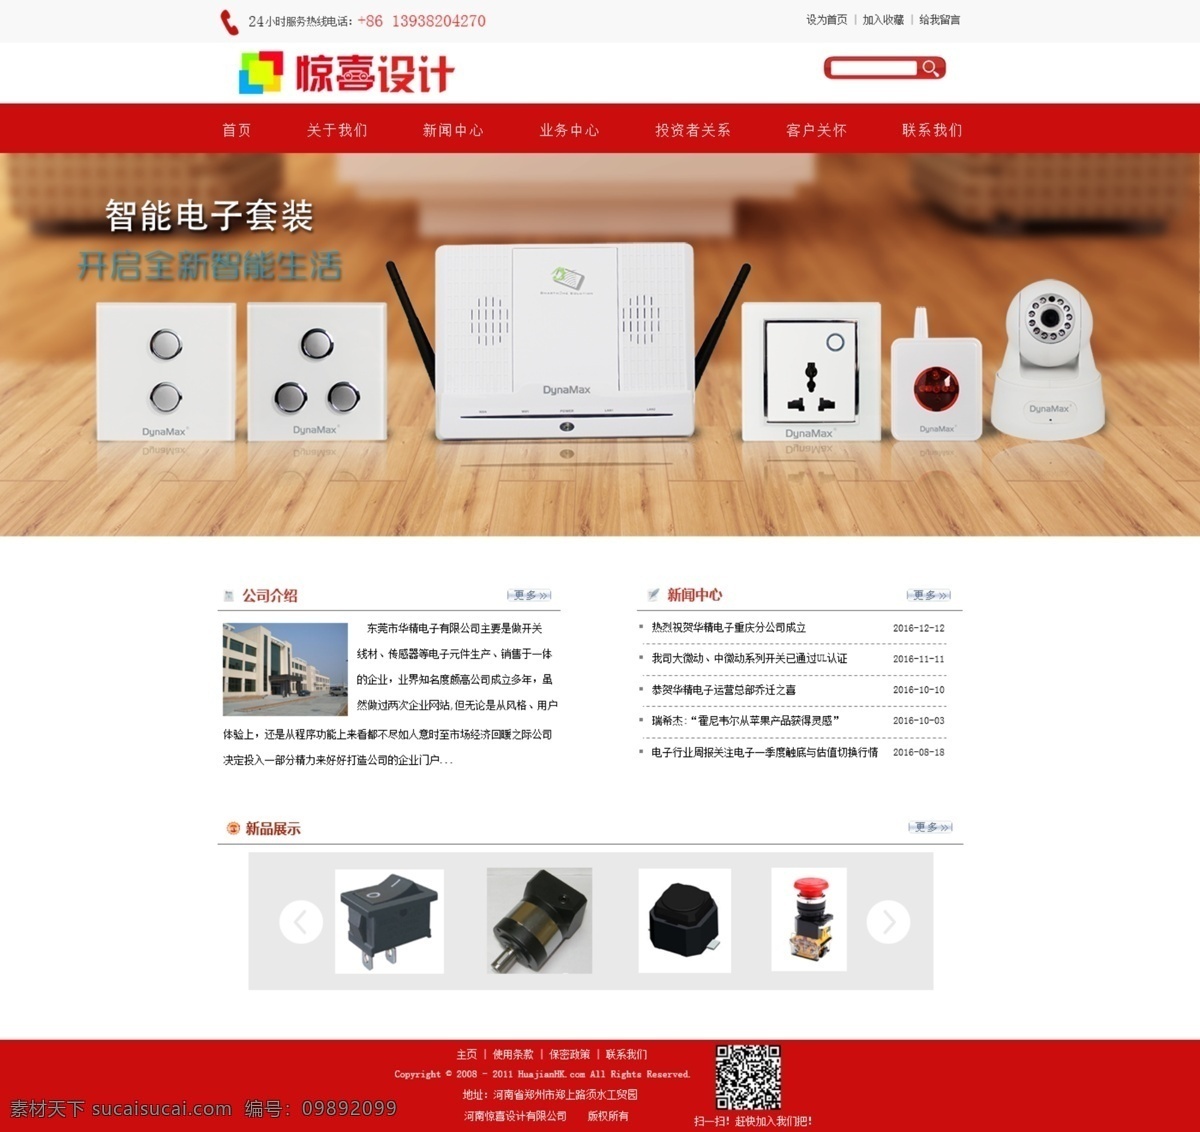 红色 风格 电子元件 首页 网站 企业网站 大方网站模板 电子元件企业 电子元件研发